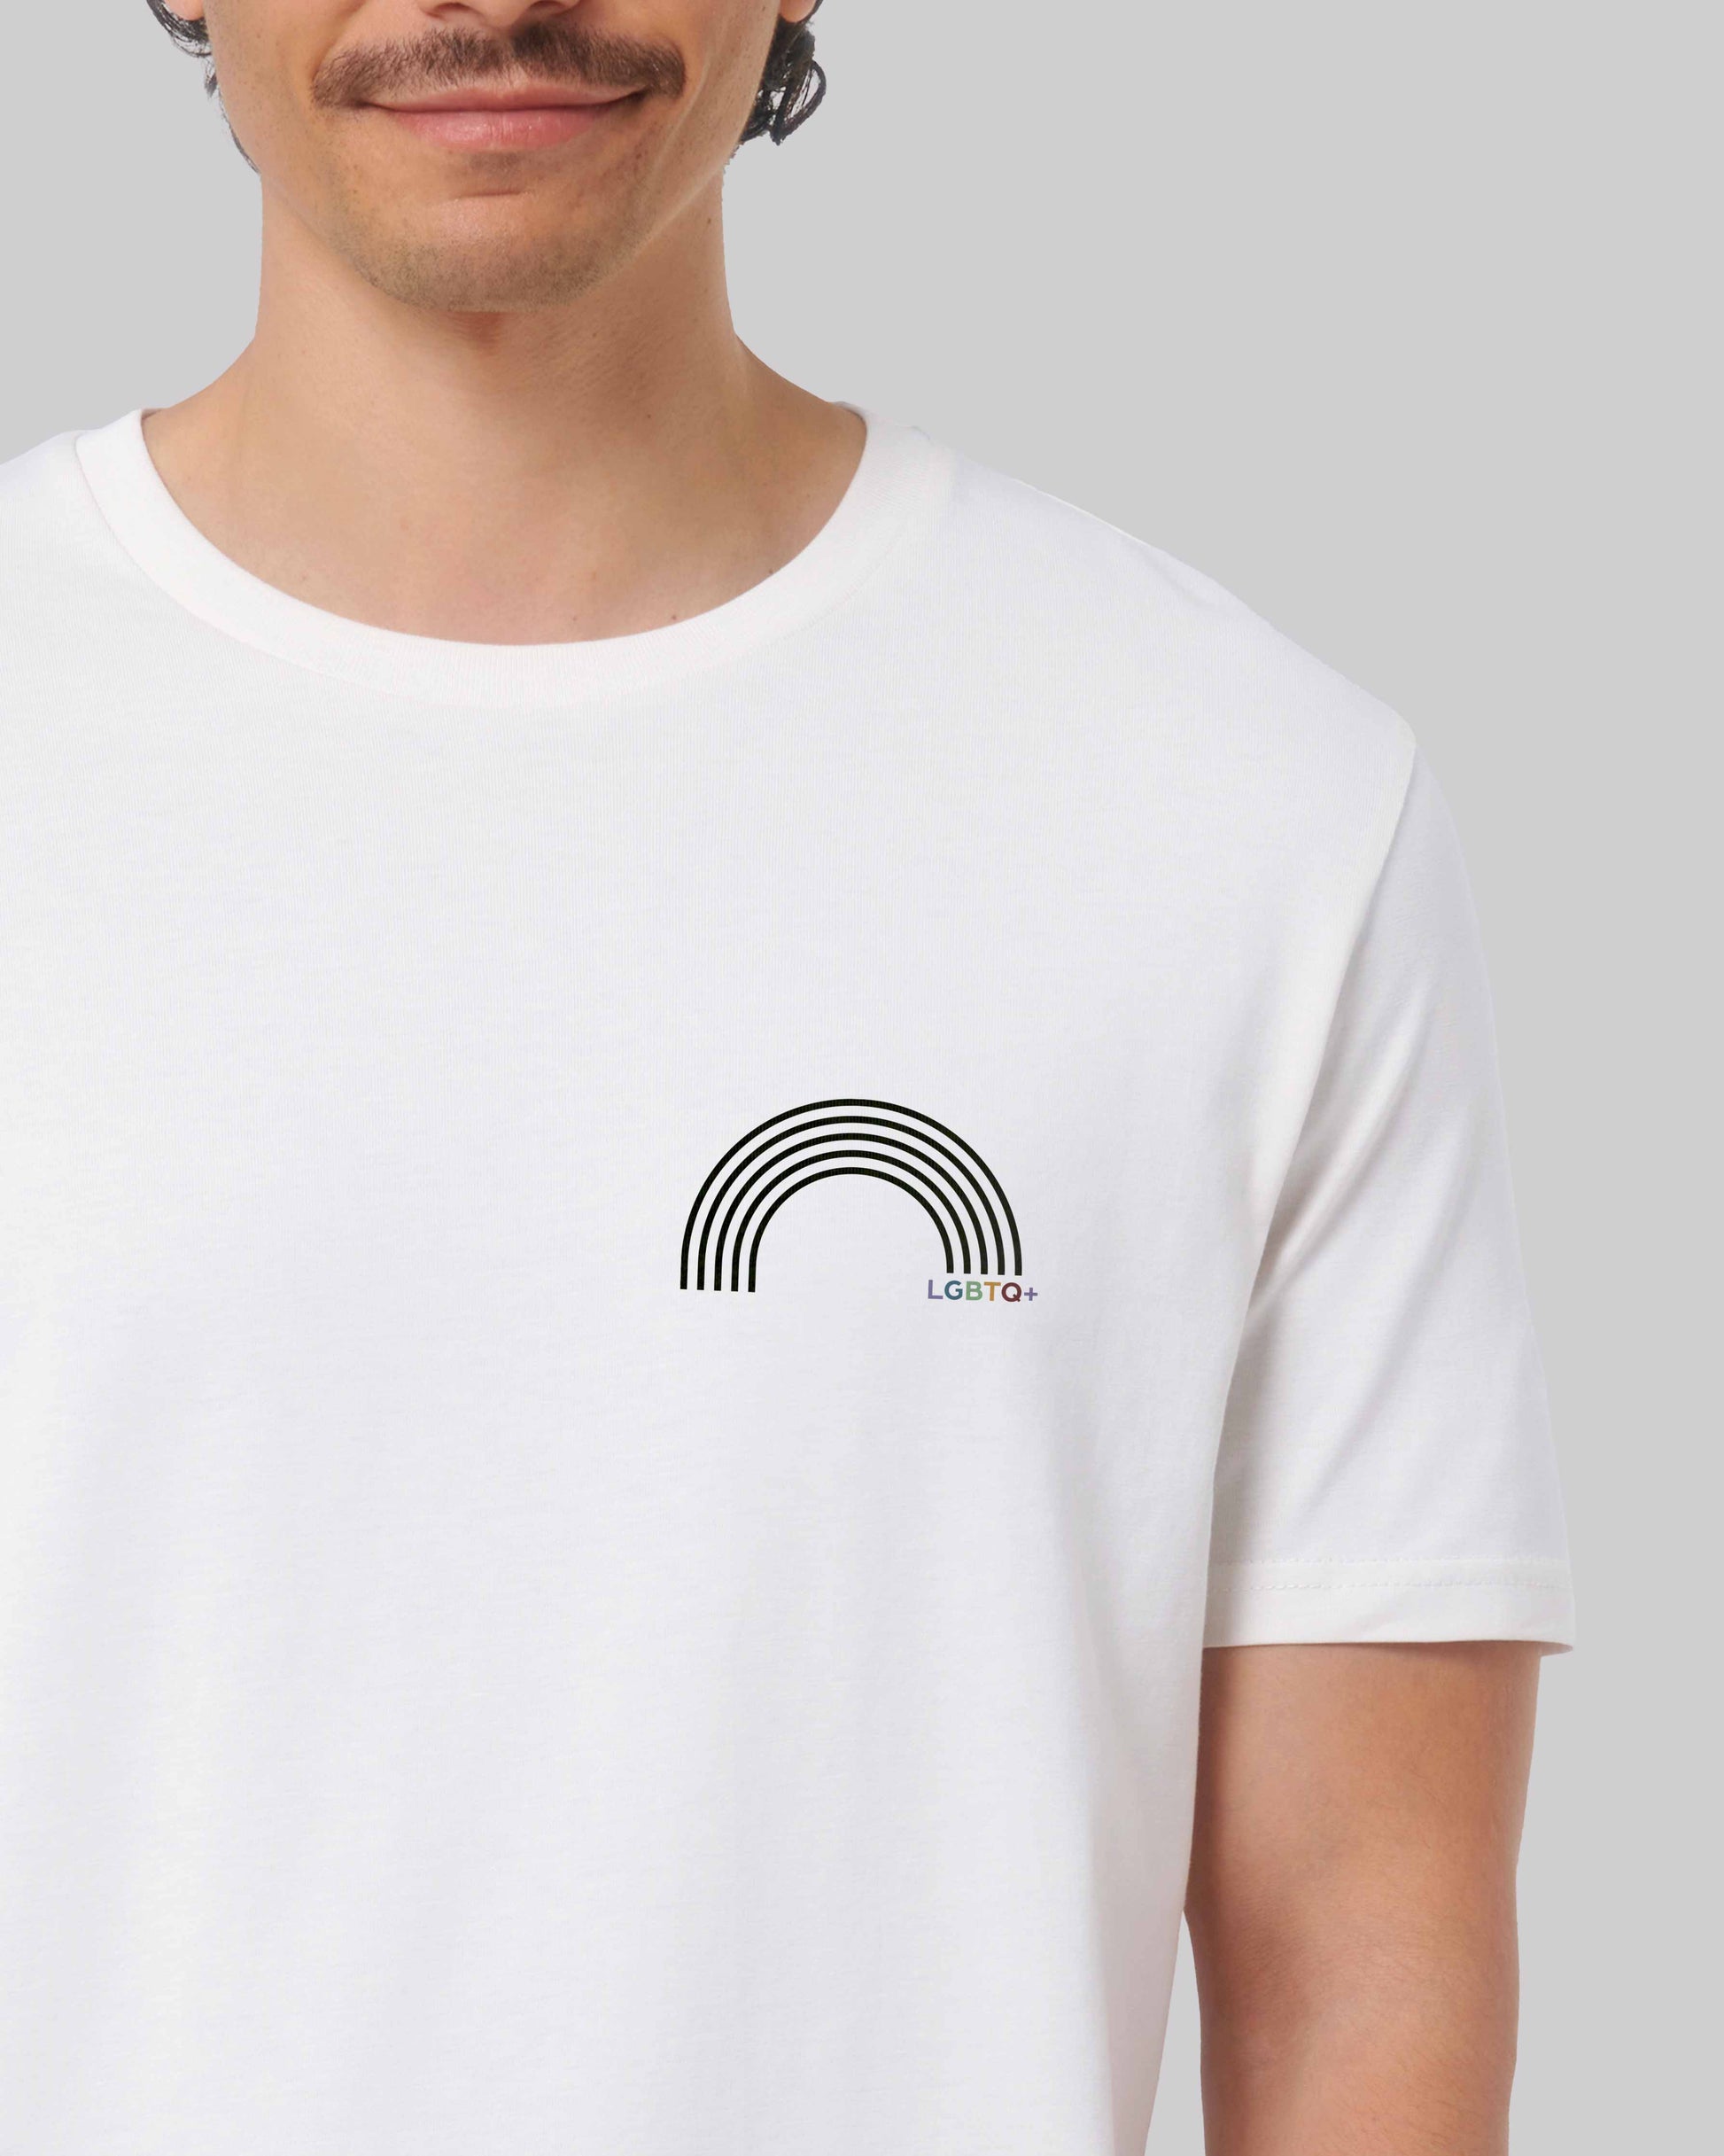 EINHORST® unisex Organic Shirt in Weiß mit dem Motiv "lgbtq+ Regenbogen" in der Kombination schwarzer Regenbogen mit bunter Schrift, Bild von männlicher Person mit Shirt